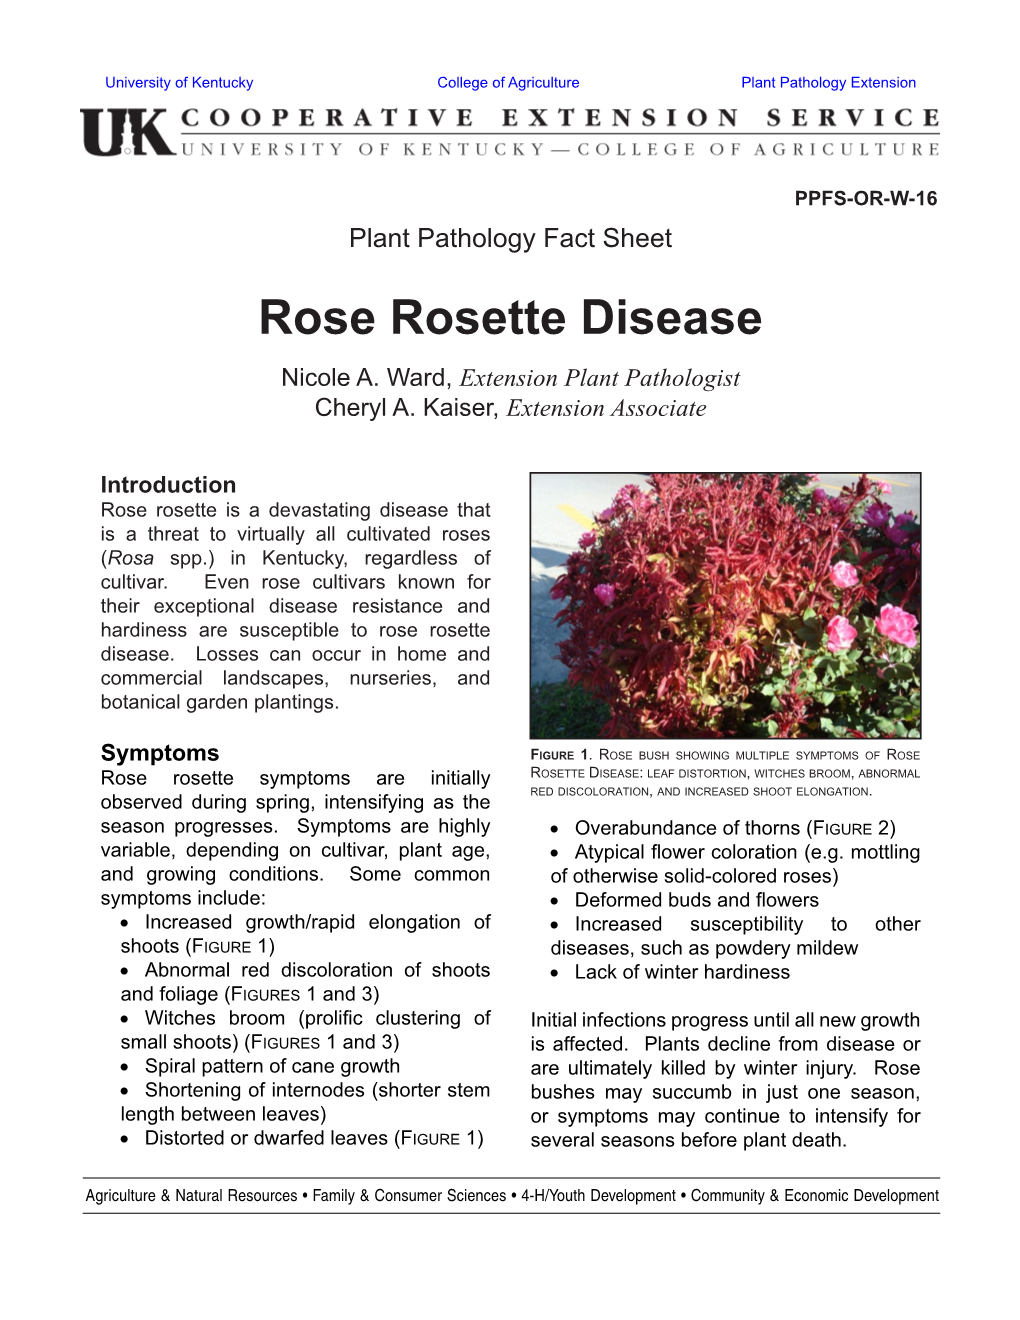 Rose Rosette Disease Nicole A